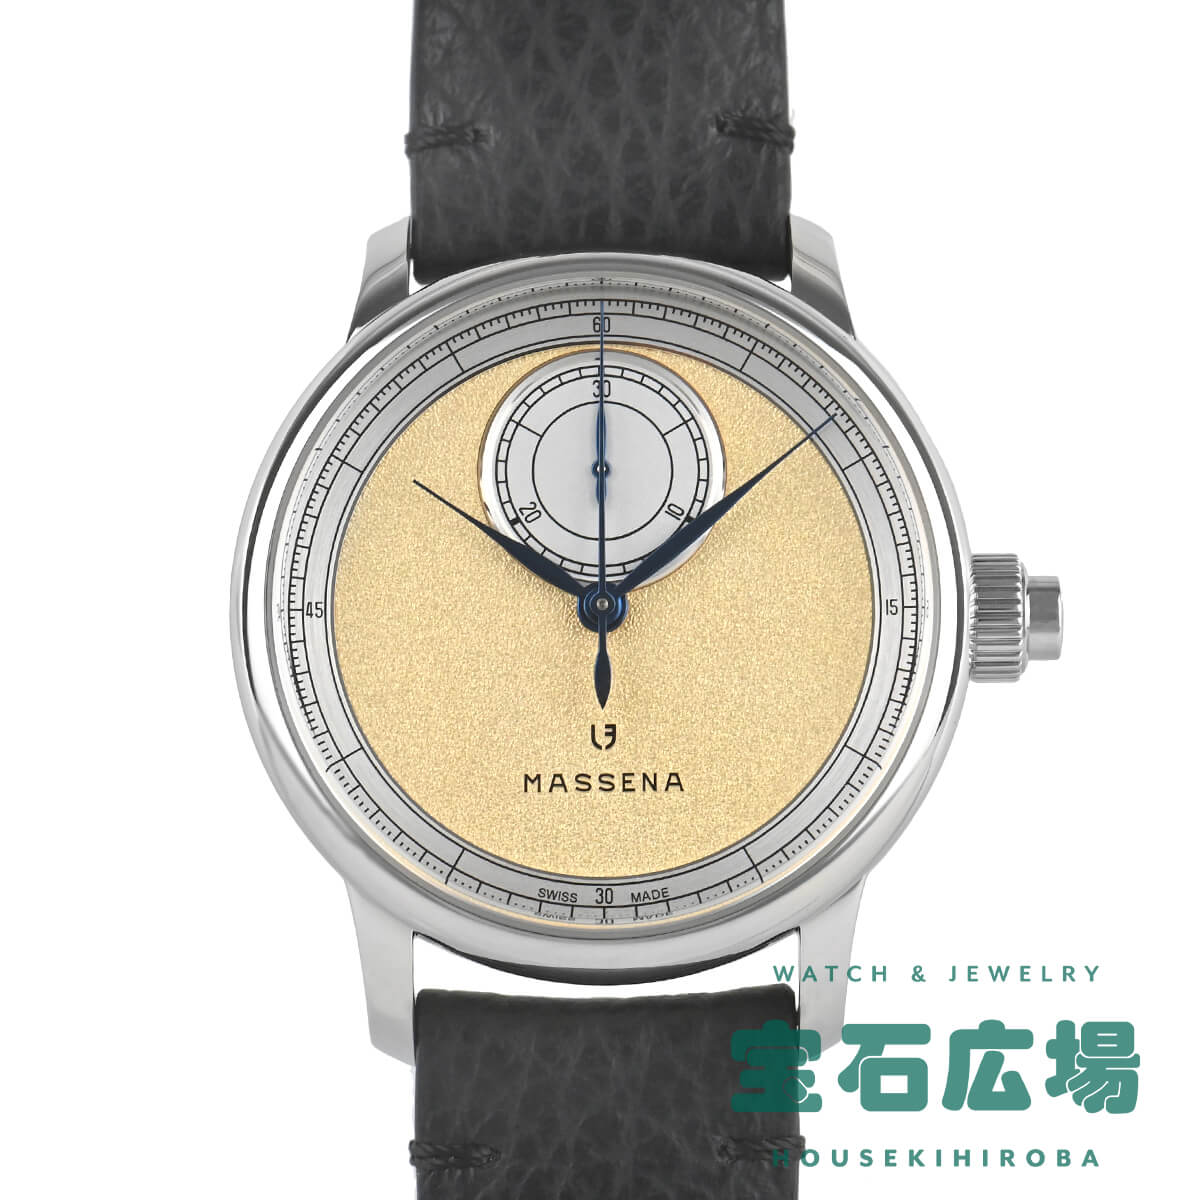 ルイエラール - 腕時計の通販・価格比較 - 価格.com